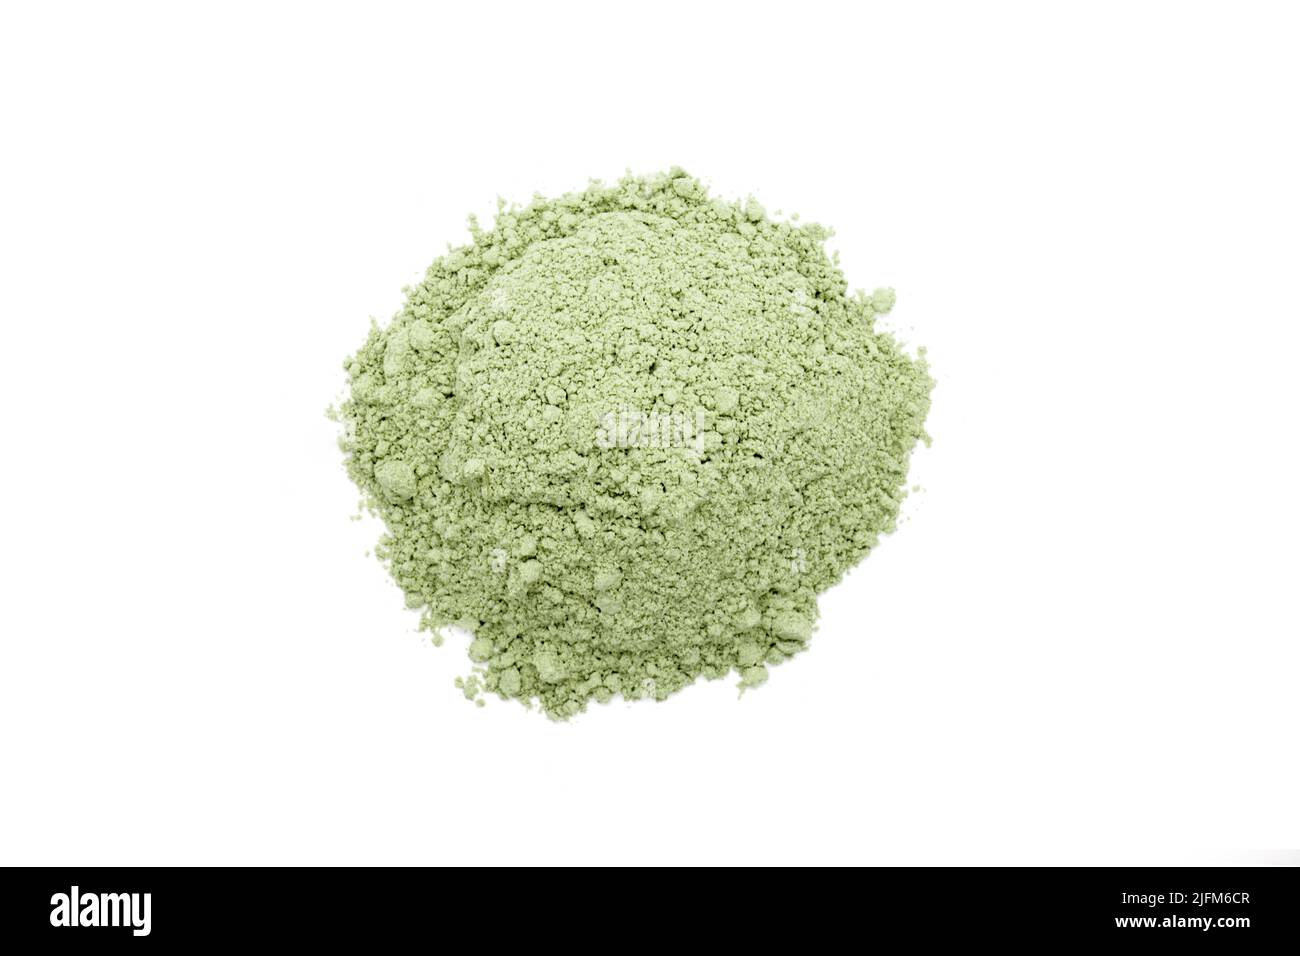 Grünes kosmetisches Tonpulver isoliert auf weißem Hintergrund - Draufsicht  Stockfotografie - Alamy